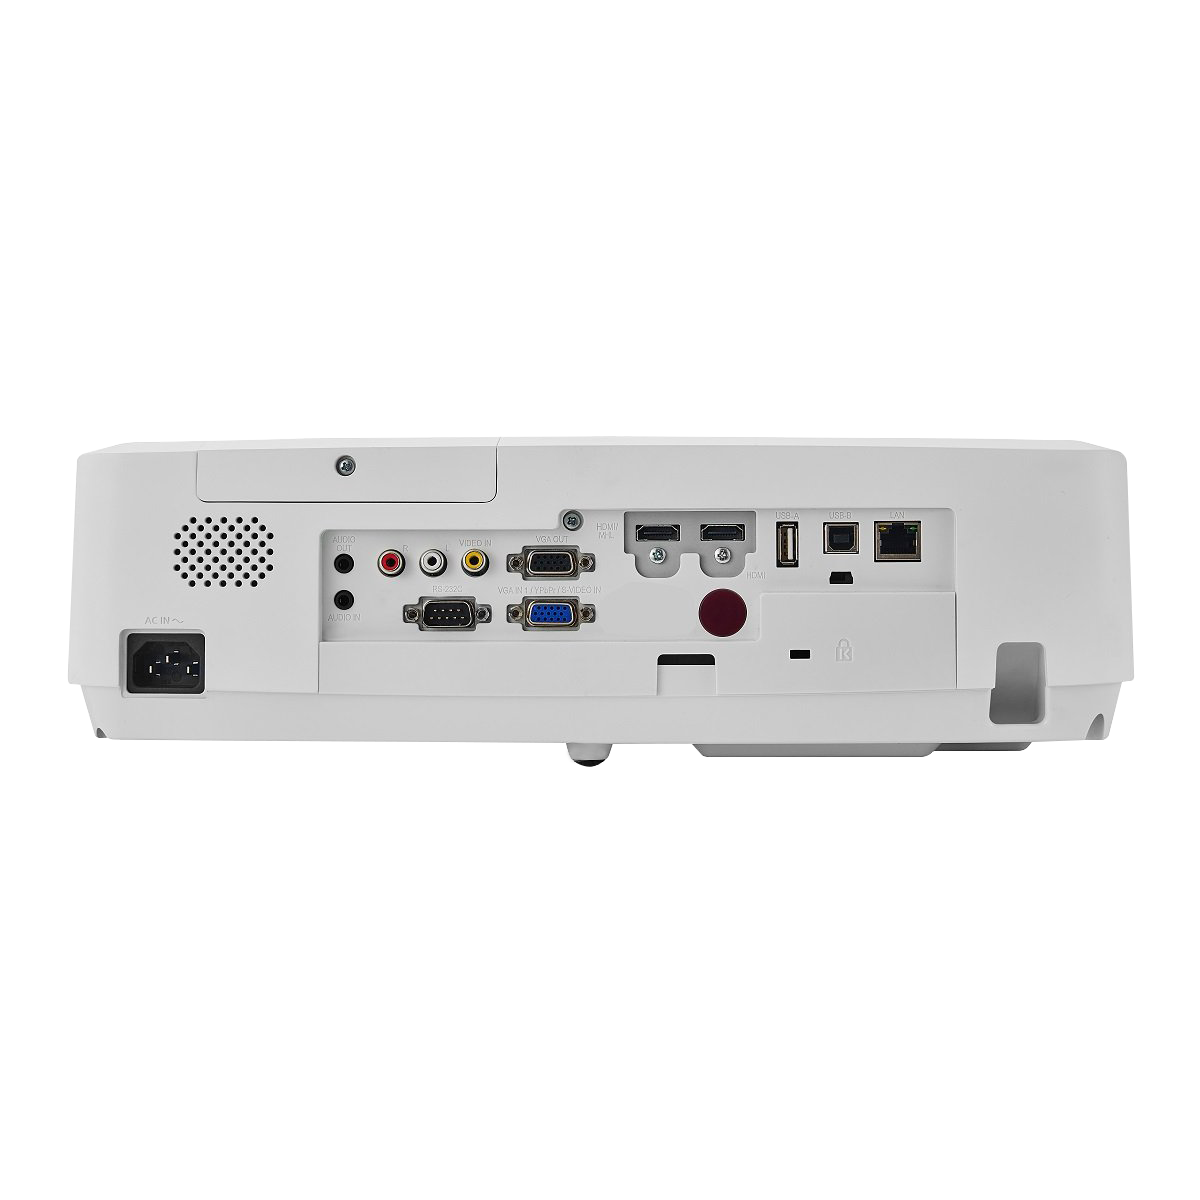 SMX MX-L550U 5500 Lumens WUXGA 3LCD Projector HDMI VGA 10000:1